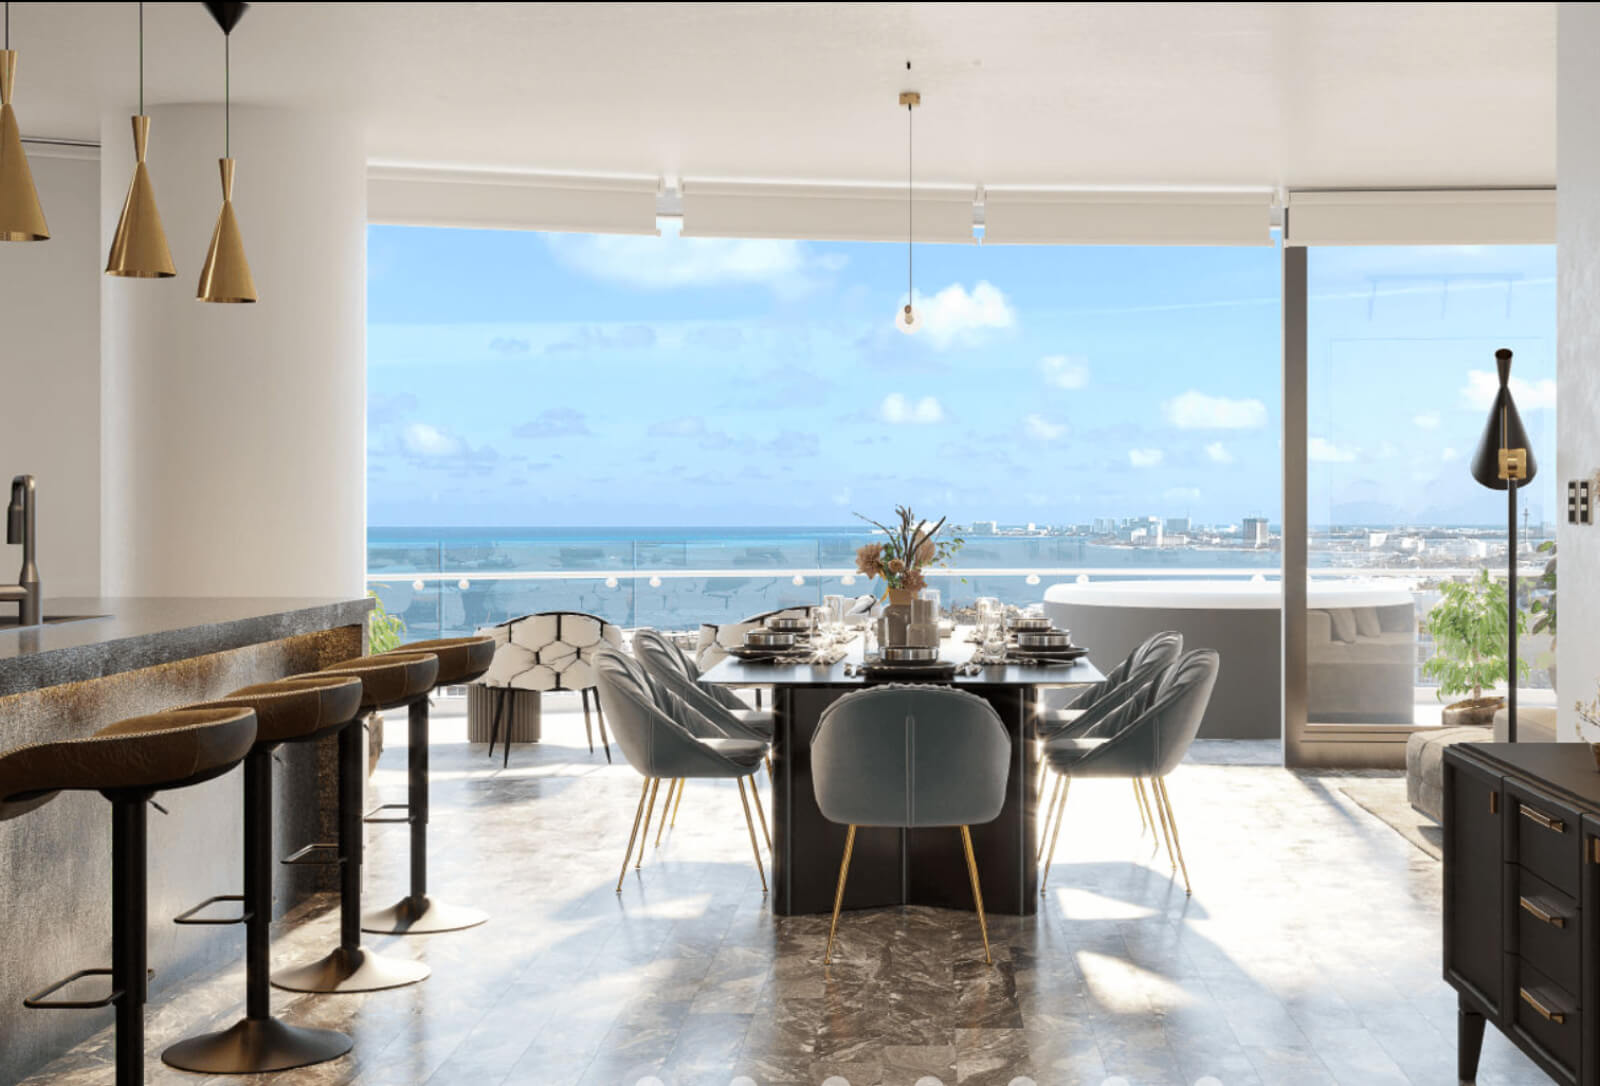 Penthouse frente al mar , alberca privada, amenidades de lujo en Emerald Cancun Zona Hotelera venta.